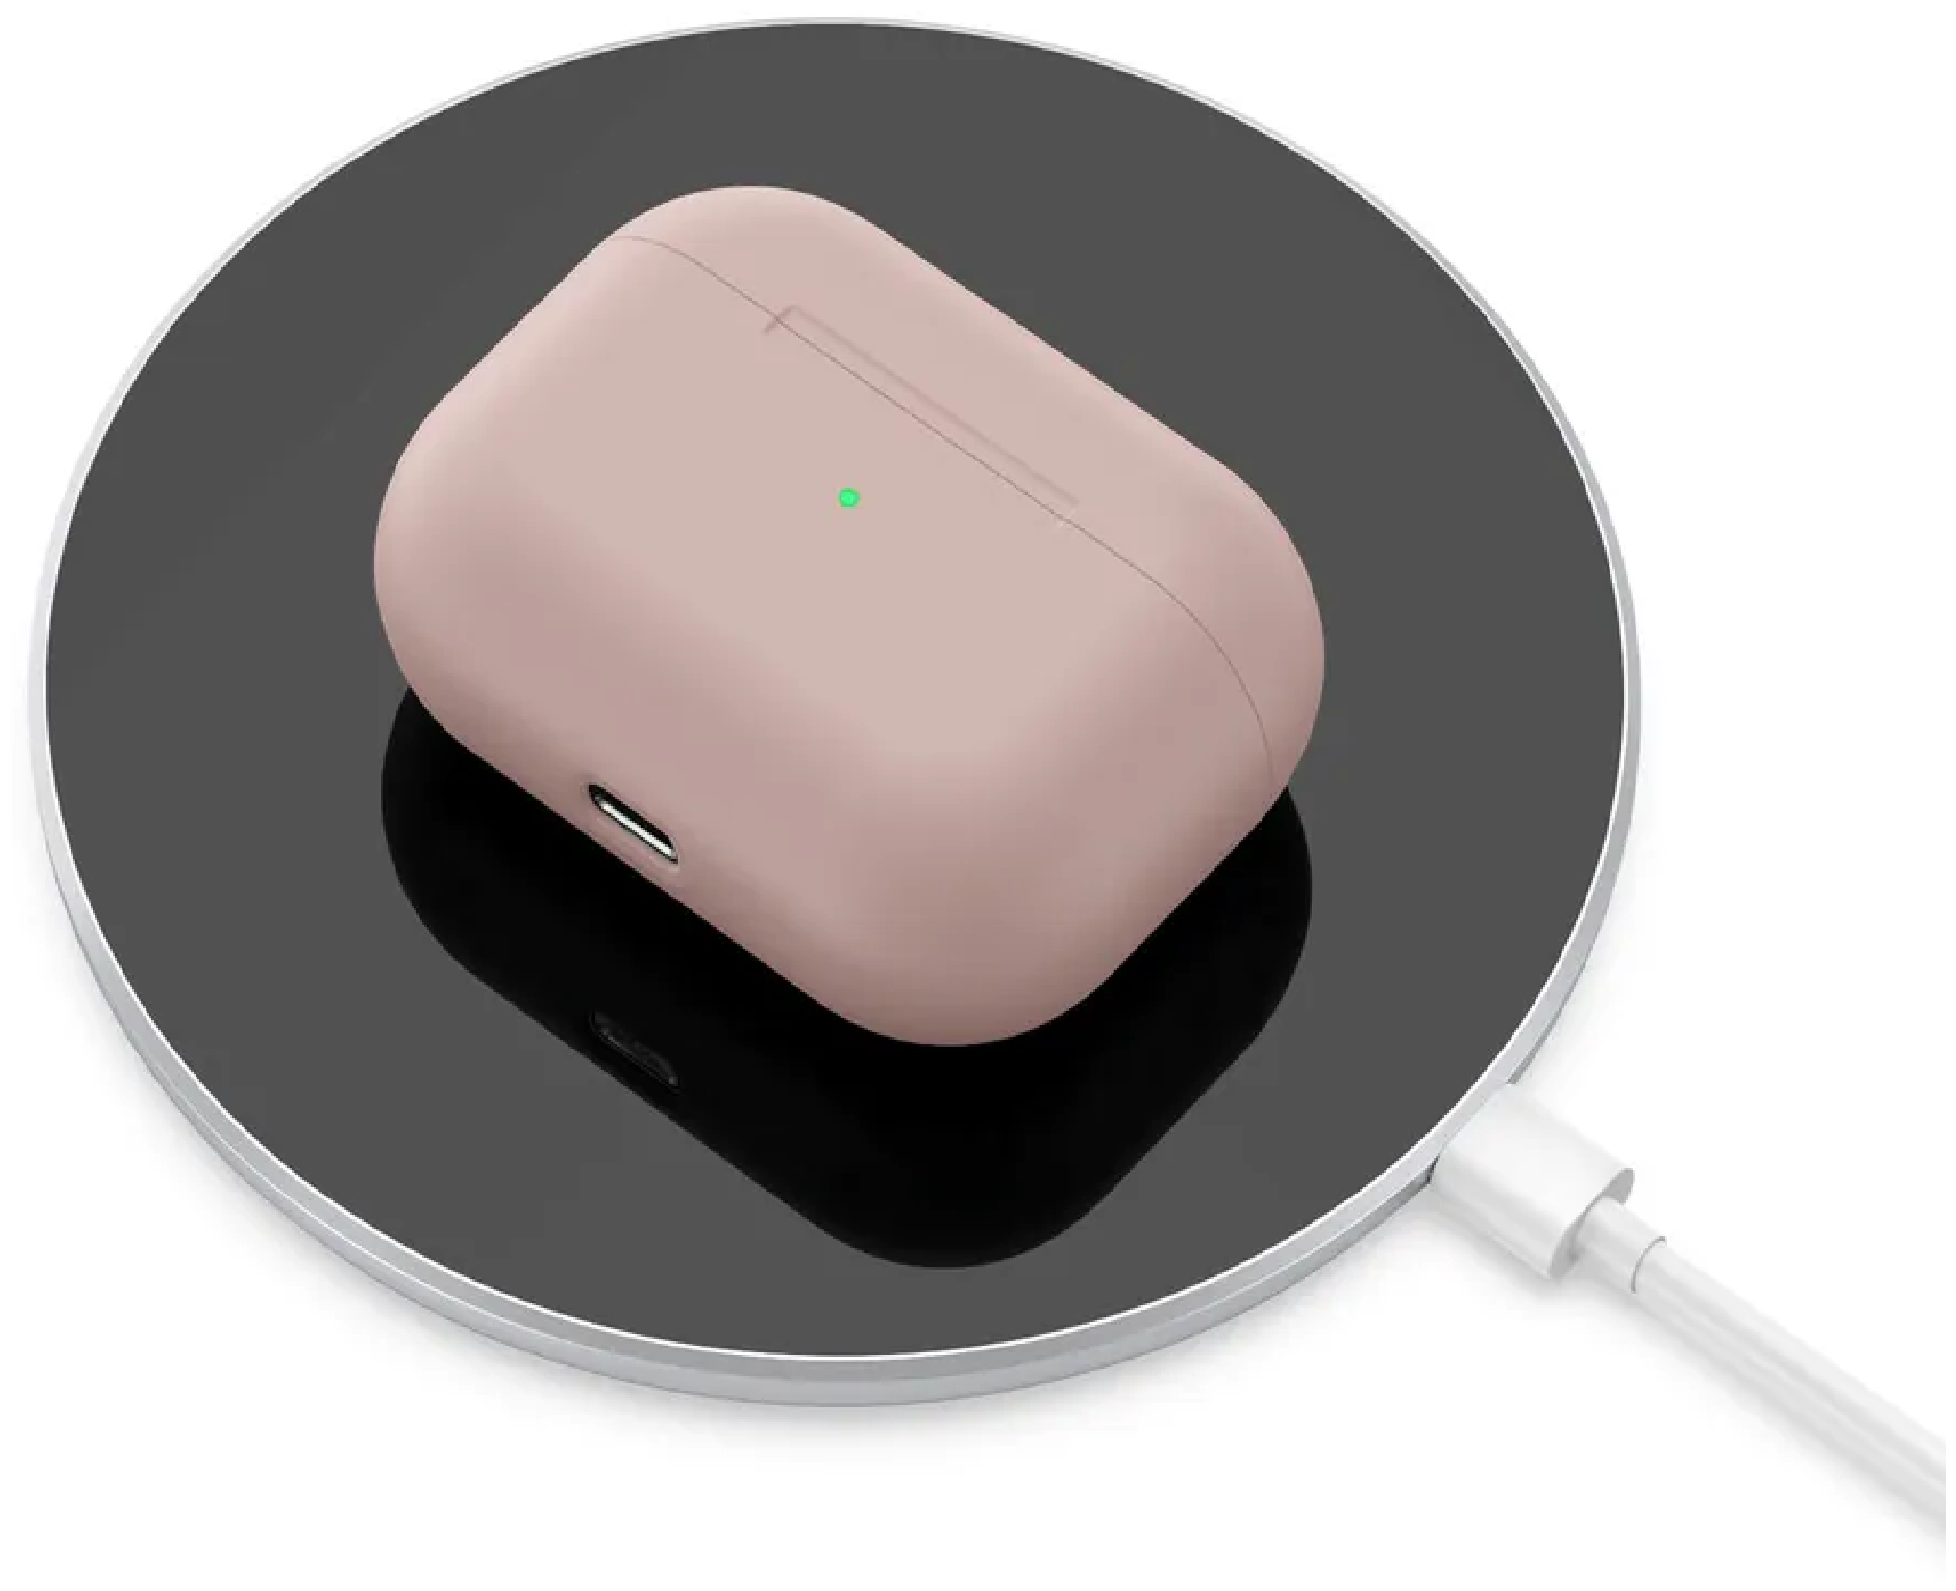 Чехол силиконовый для наушников AirPods Pro ЭирПодс Про Премиум класса Pink / Ультратонкий (Розовый)